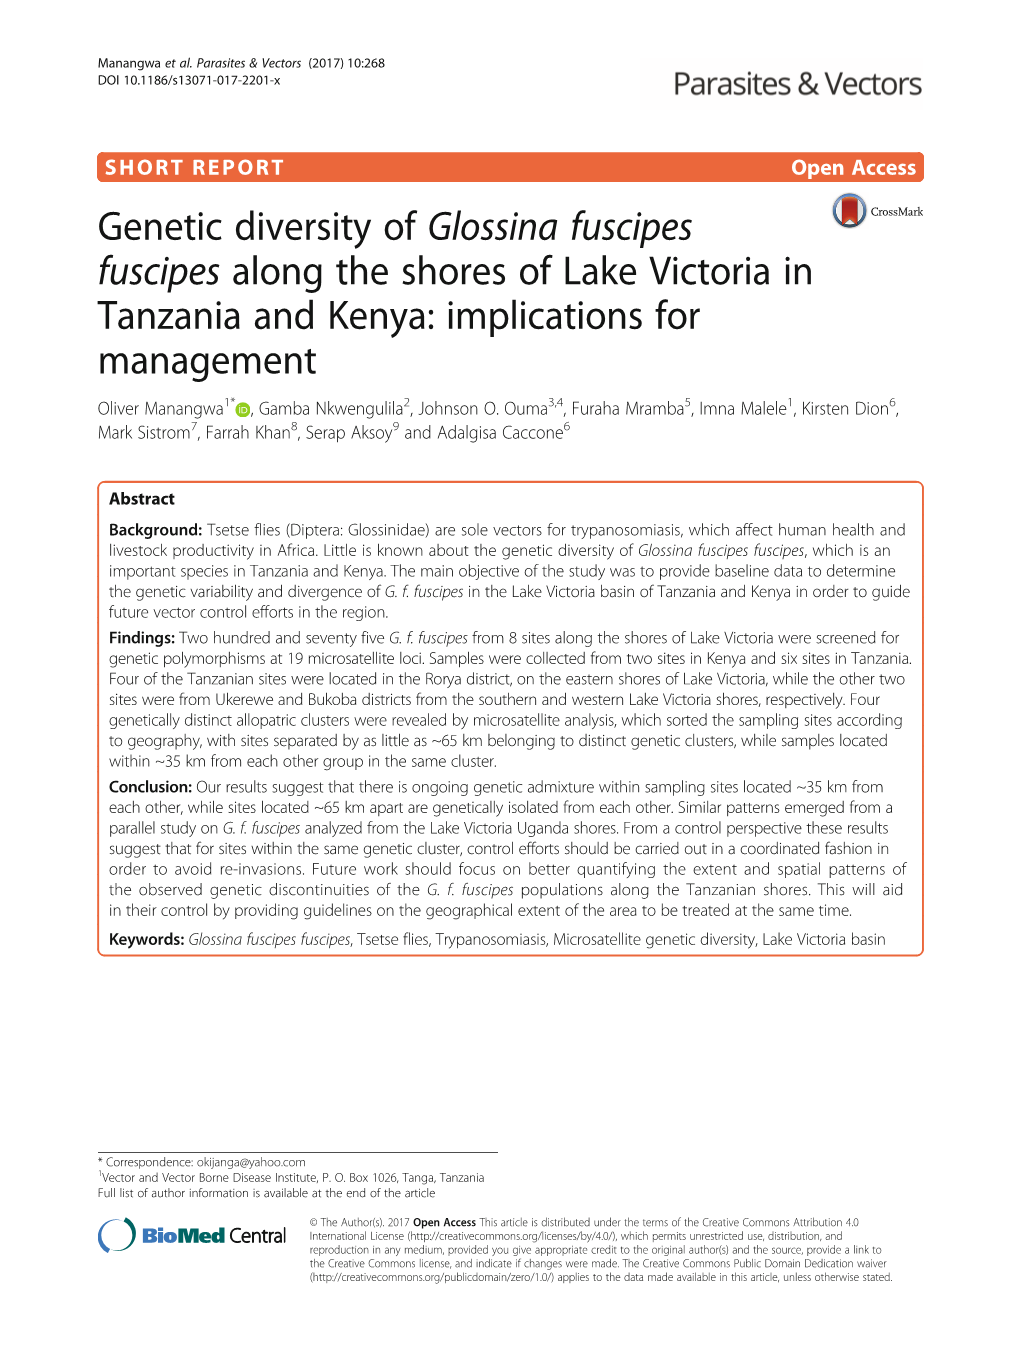 Genetic Diversity of Glossina Fuscipes Fuscipes Along